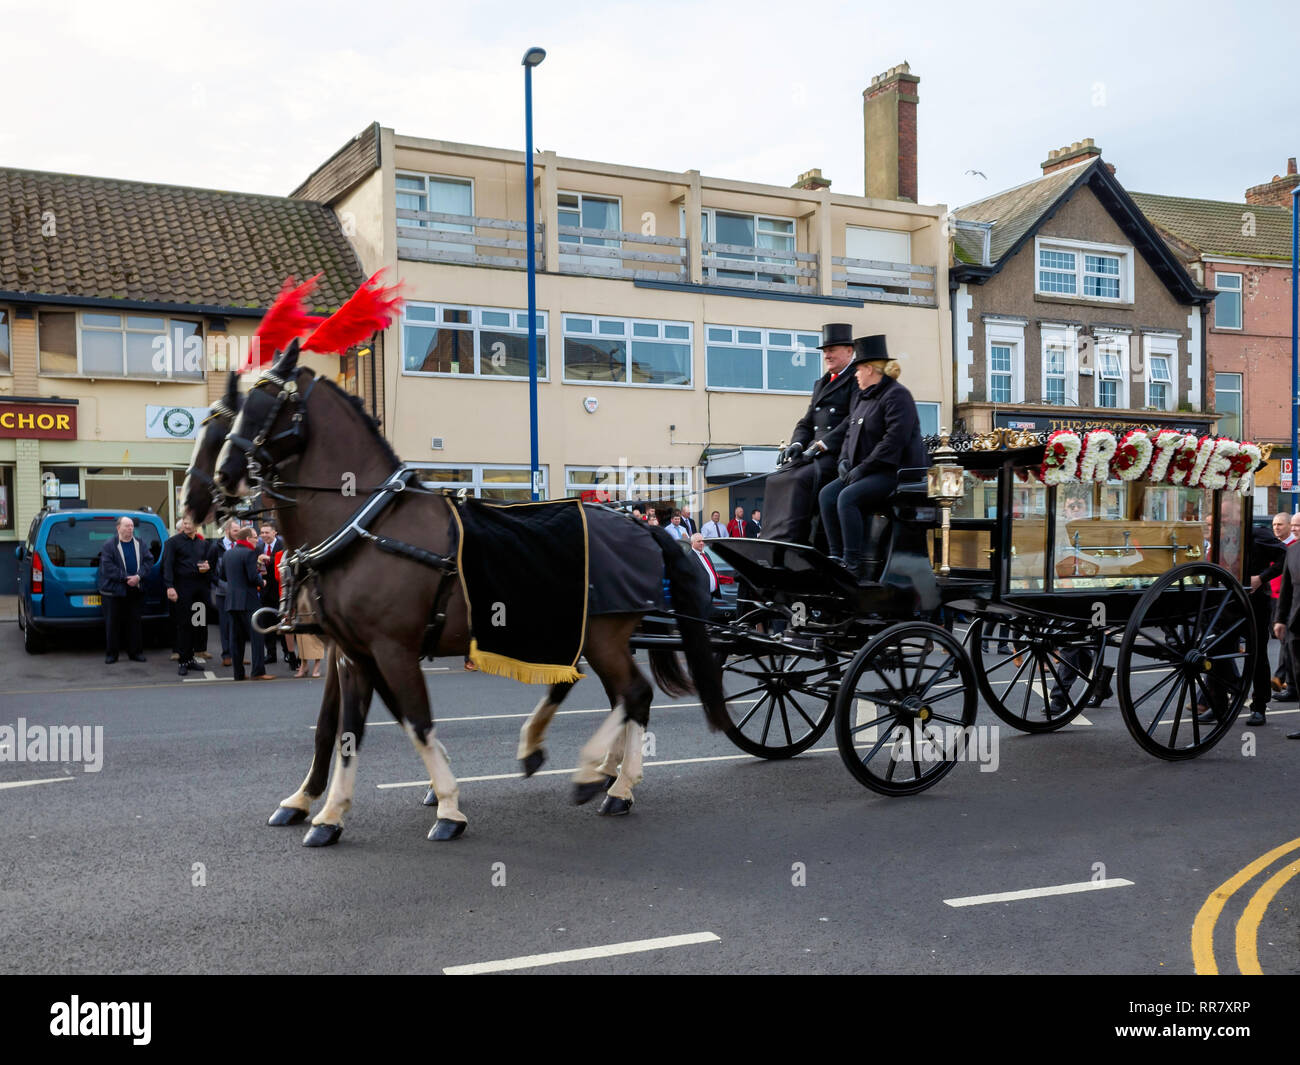 Un funeral en el norte de Inglaterra, con una tradicional carroza fúnebre tirado por dos caballos negros Foto de stock